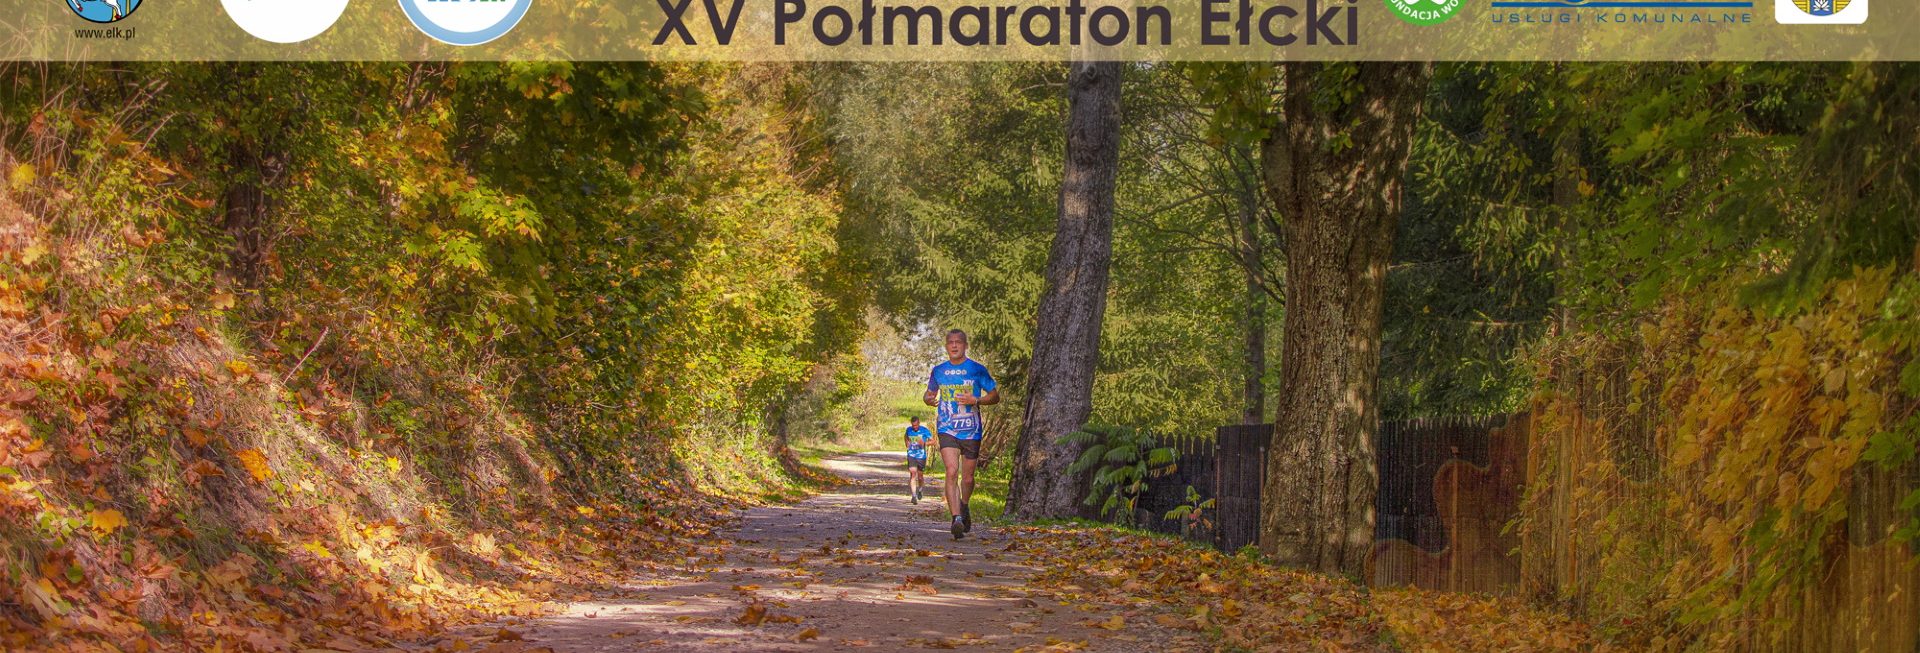 Plakat zapraszający do Ełku na 15. edycję Półmaratonu Ełckiego 2022.